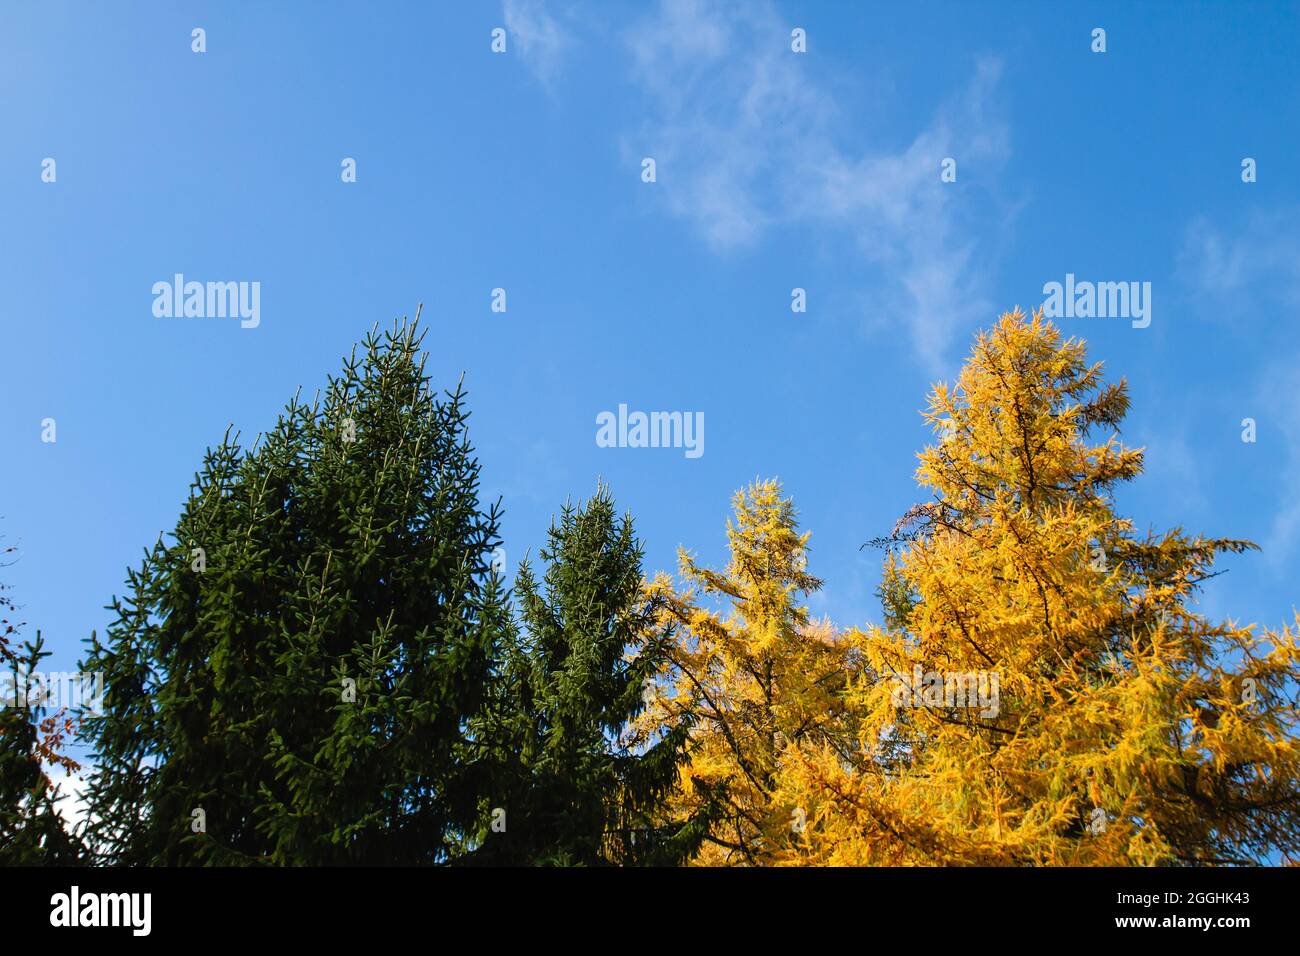 Picea Evergreen et larix à feuilles caduques ou mélèze avec feuillage vert et jaune ressemblant à des aiguilles au début de l'automne, conifères mixtes, fond bleu du ciel Banque D'Images